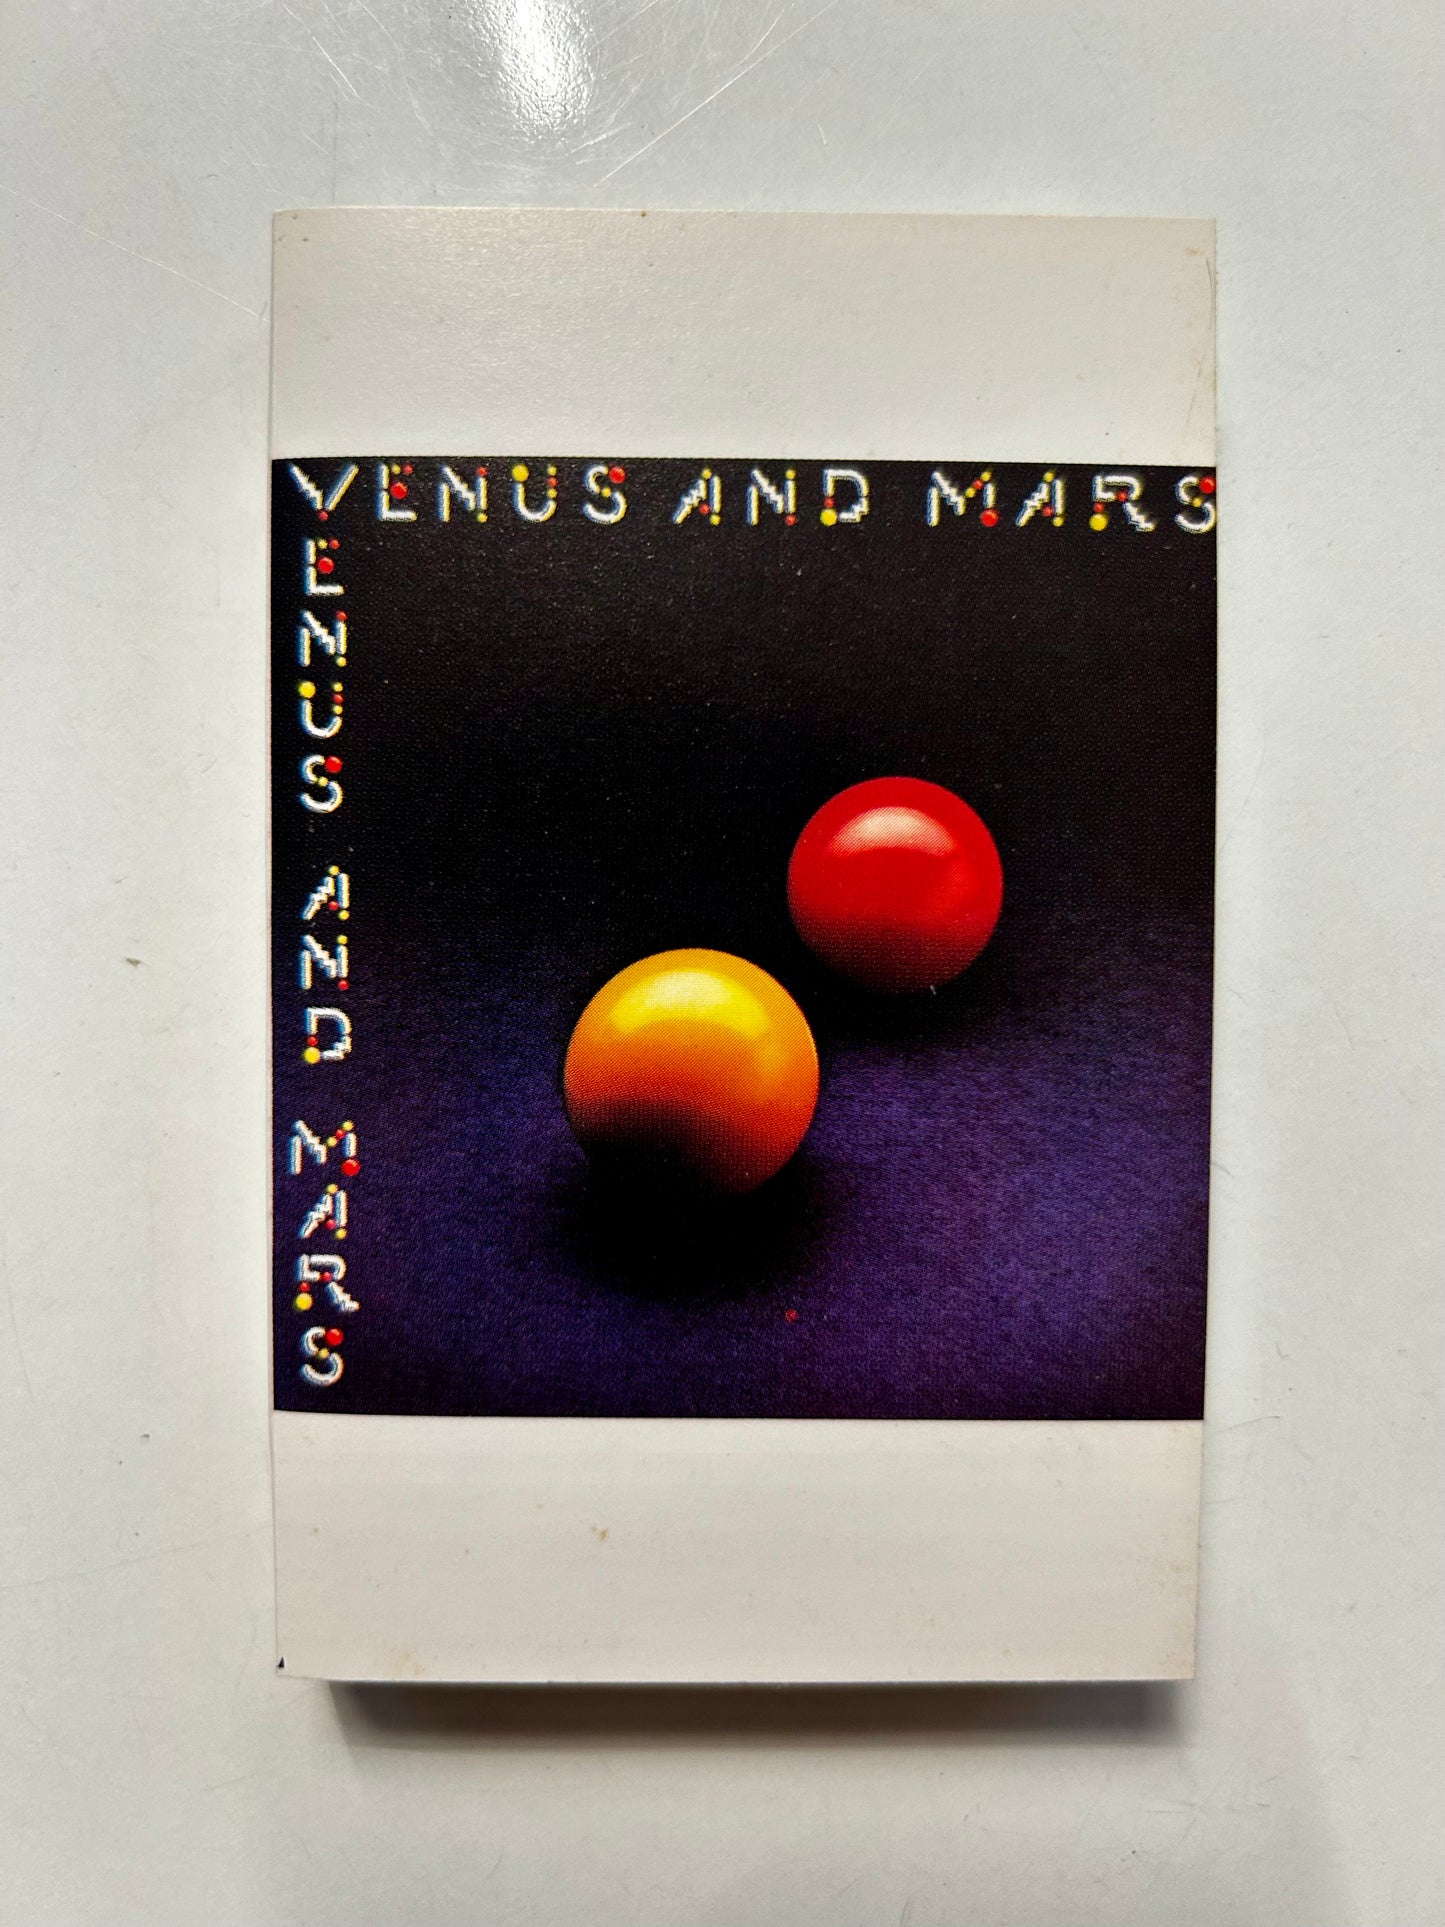 Wings, Venus and Mars